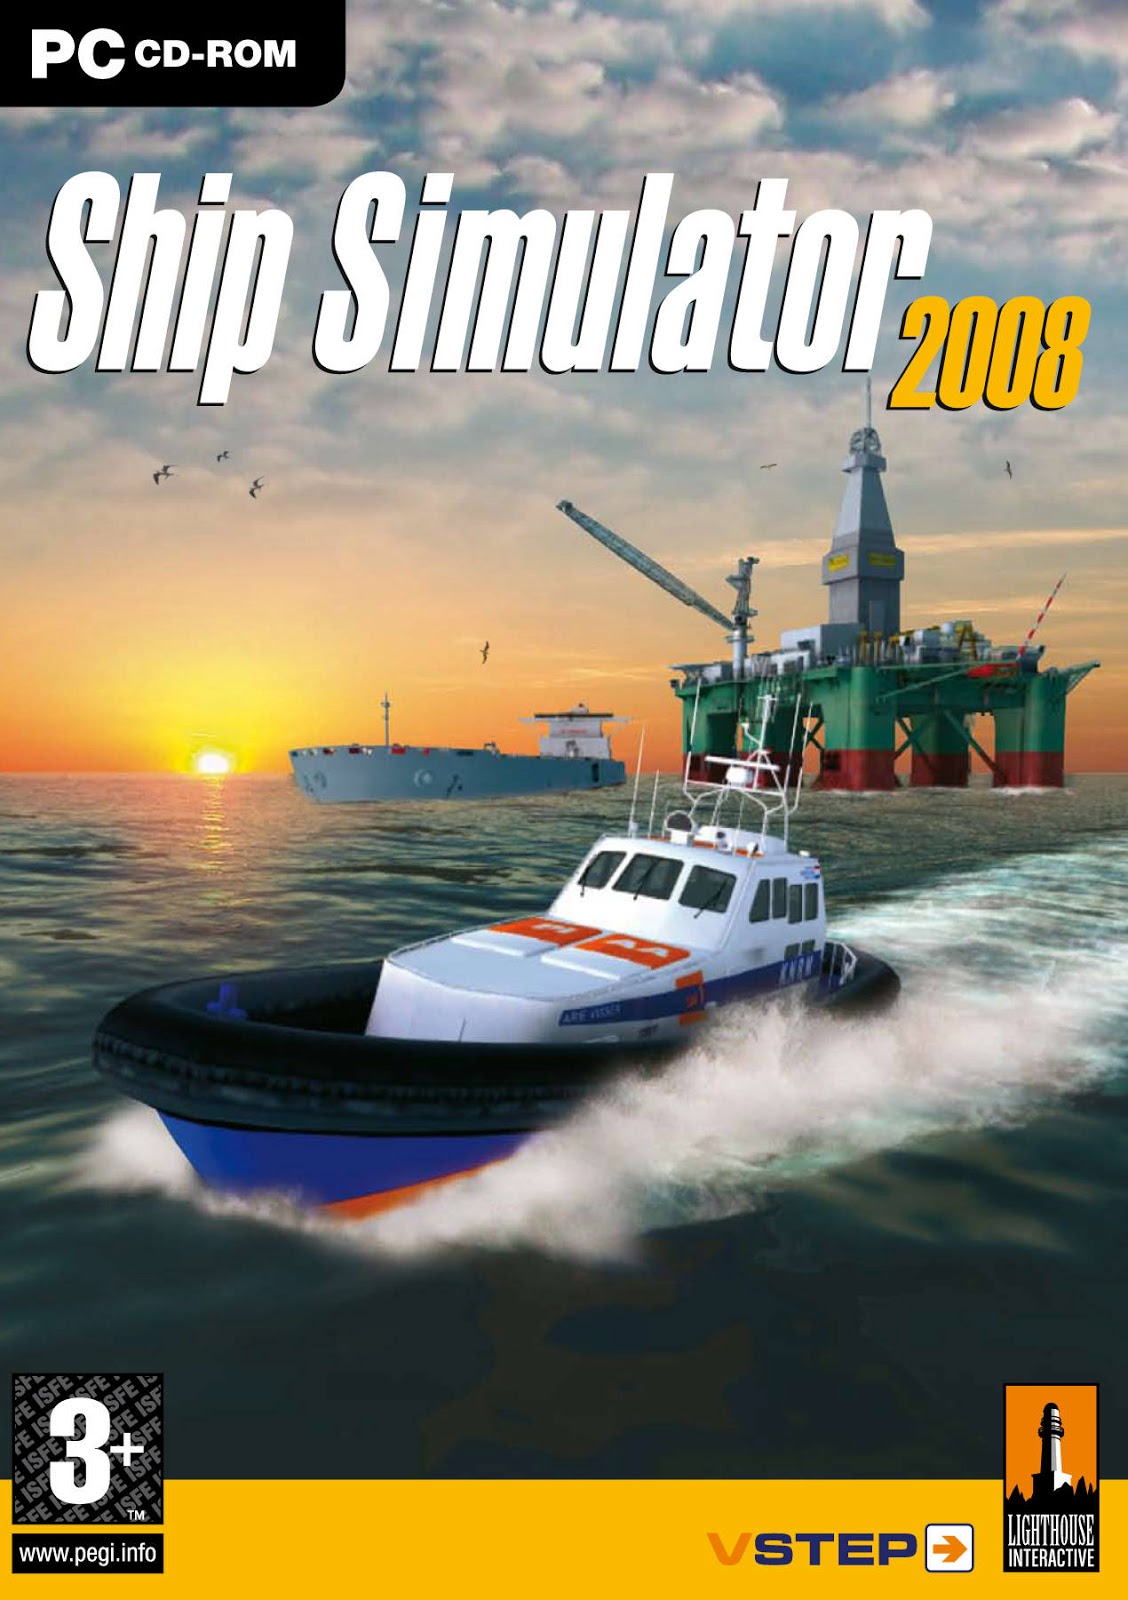 Download Game Ship Simulator 2008 Full Version